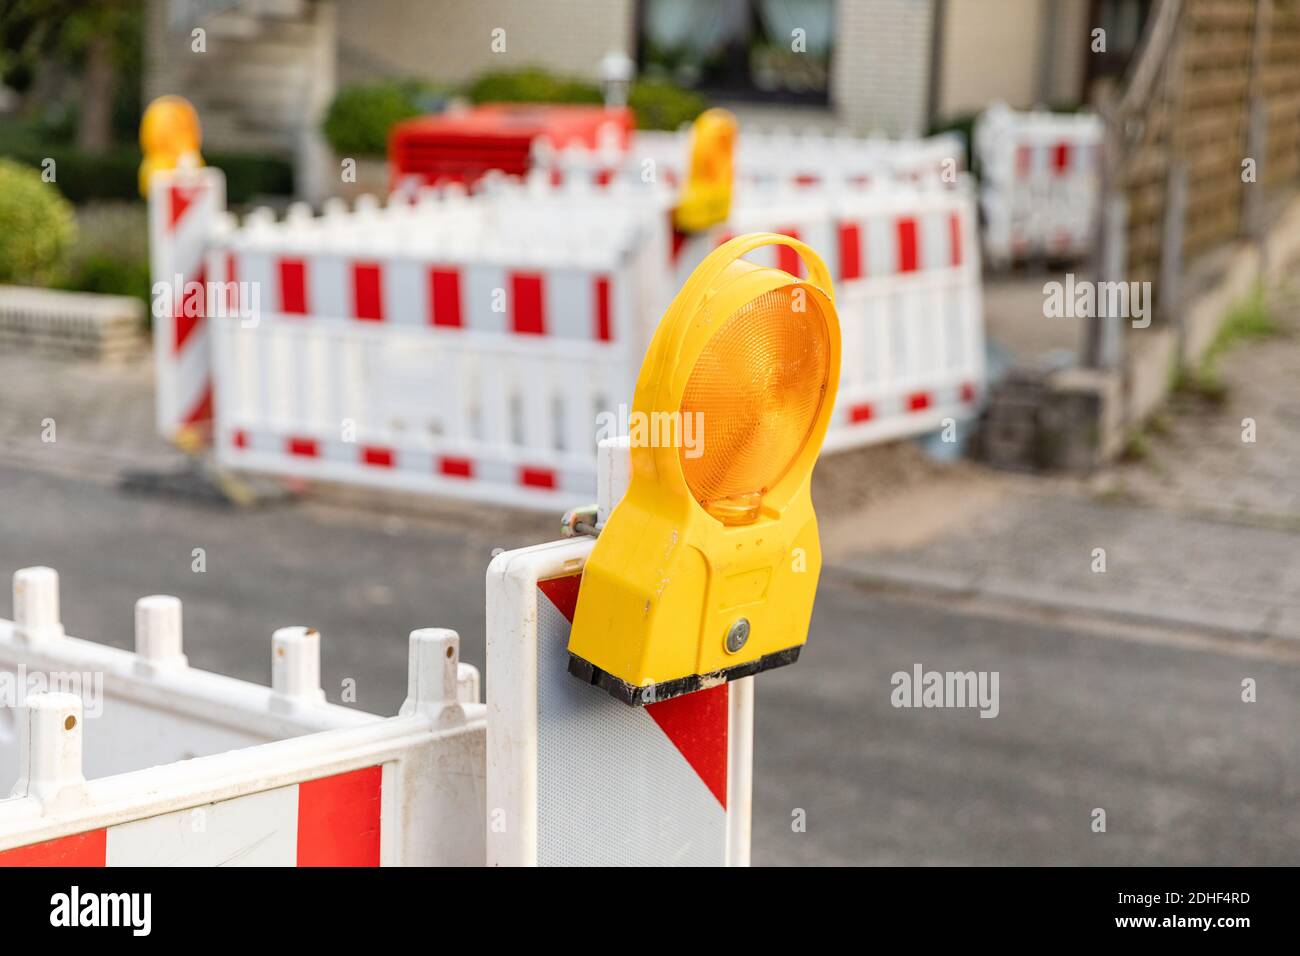 Photo sélective de la lampe de signalisation jaune sur la rue barrière Banque D'Images